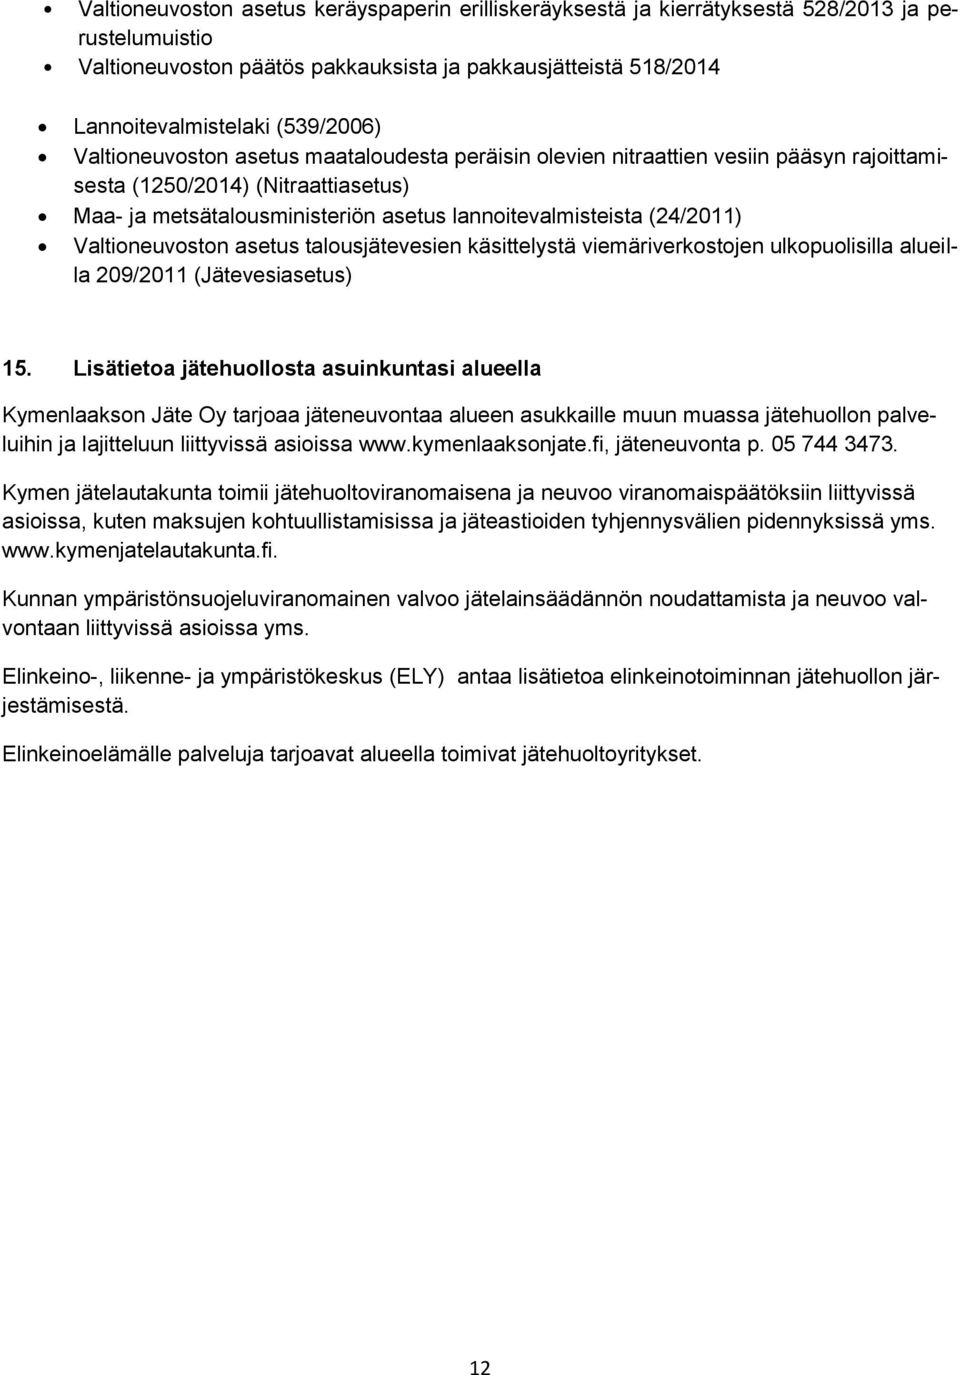 Valtioneuvoston asetus talousjätevesien käsittelystä viemäriverkostojen ulkopuolisilla alueilla 209/2011 (Jätevesiasetus) 15.